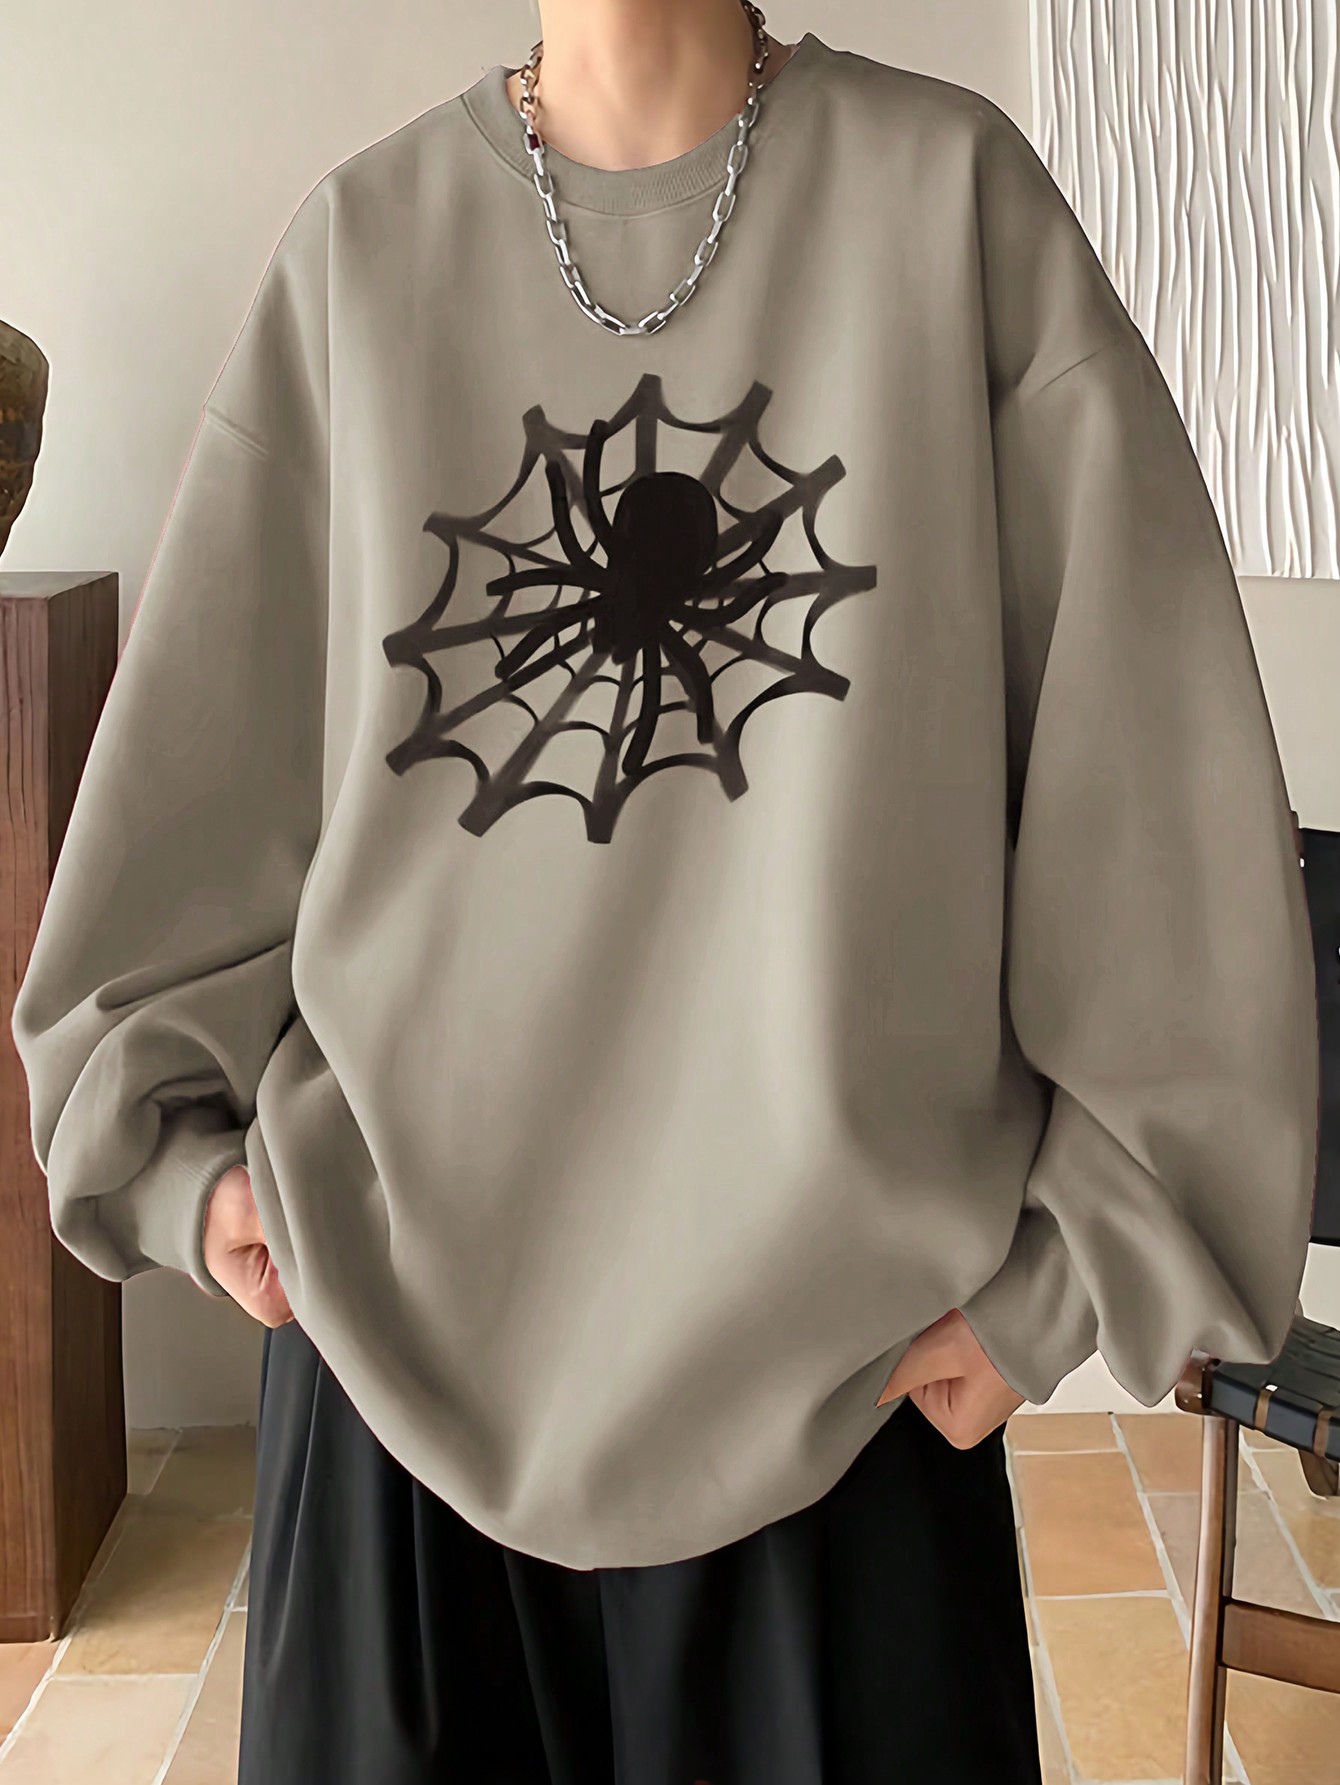 Manfinity EMRG Мужской пуловер свободного кроя с принтом паутины и заниженными плечами, хаки мужской рюкзак с двумя плечами черный